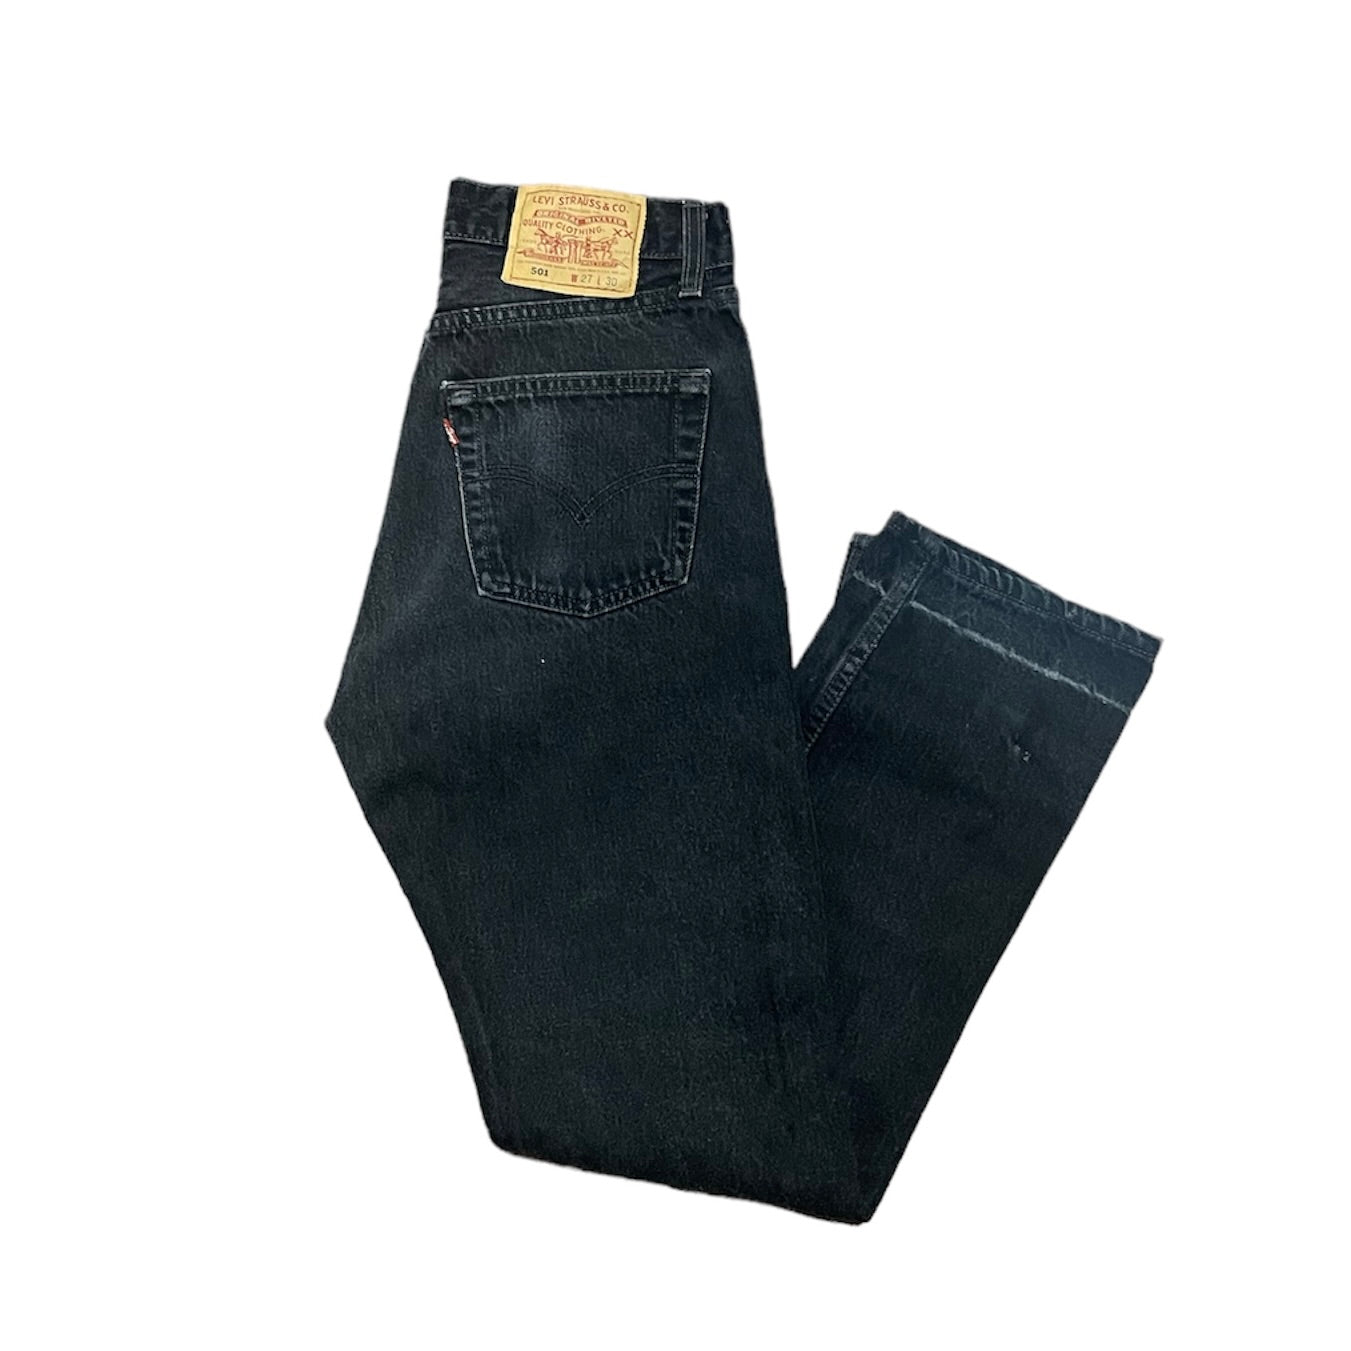 Vintage Levis 501 Black Jeans (W27/L30)